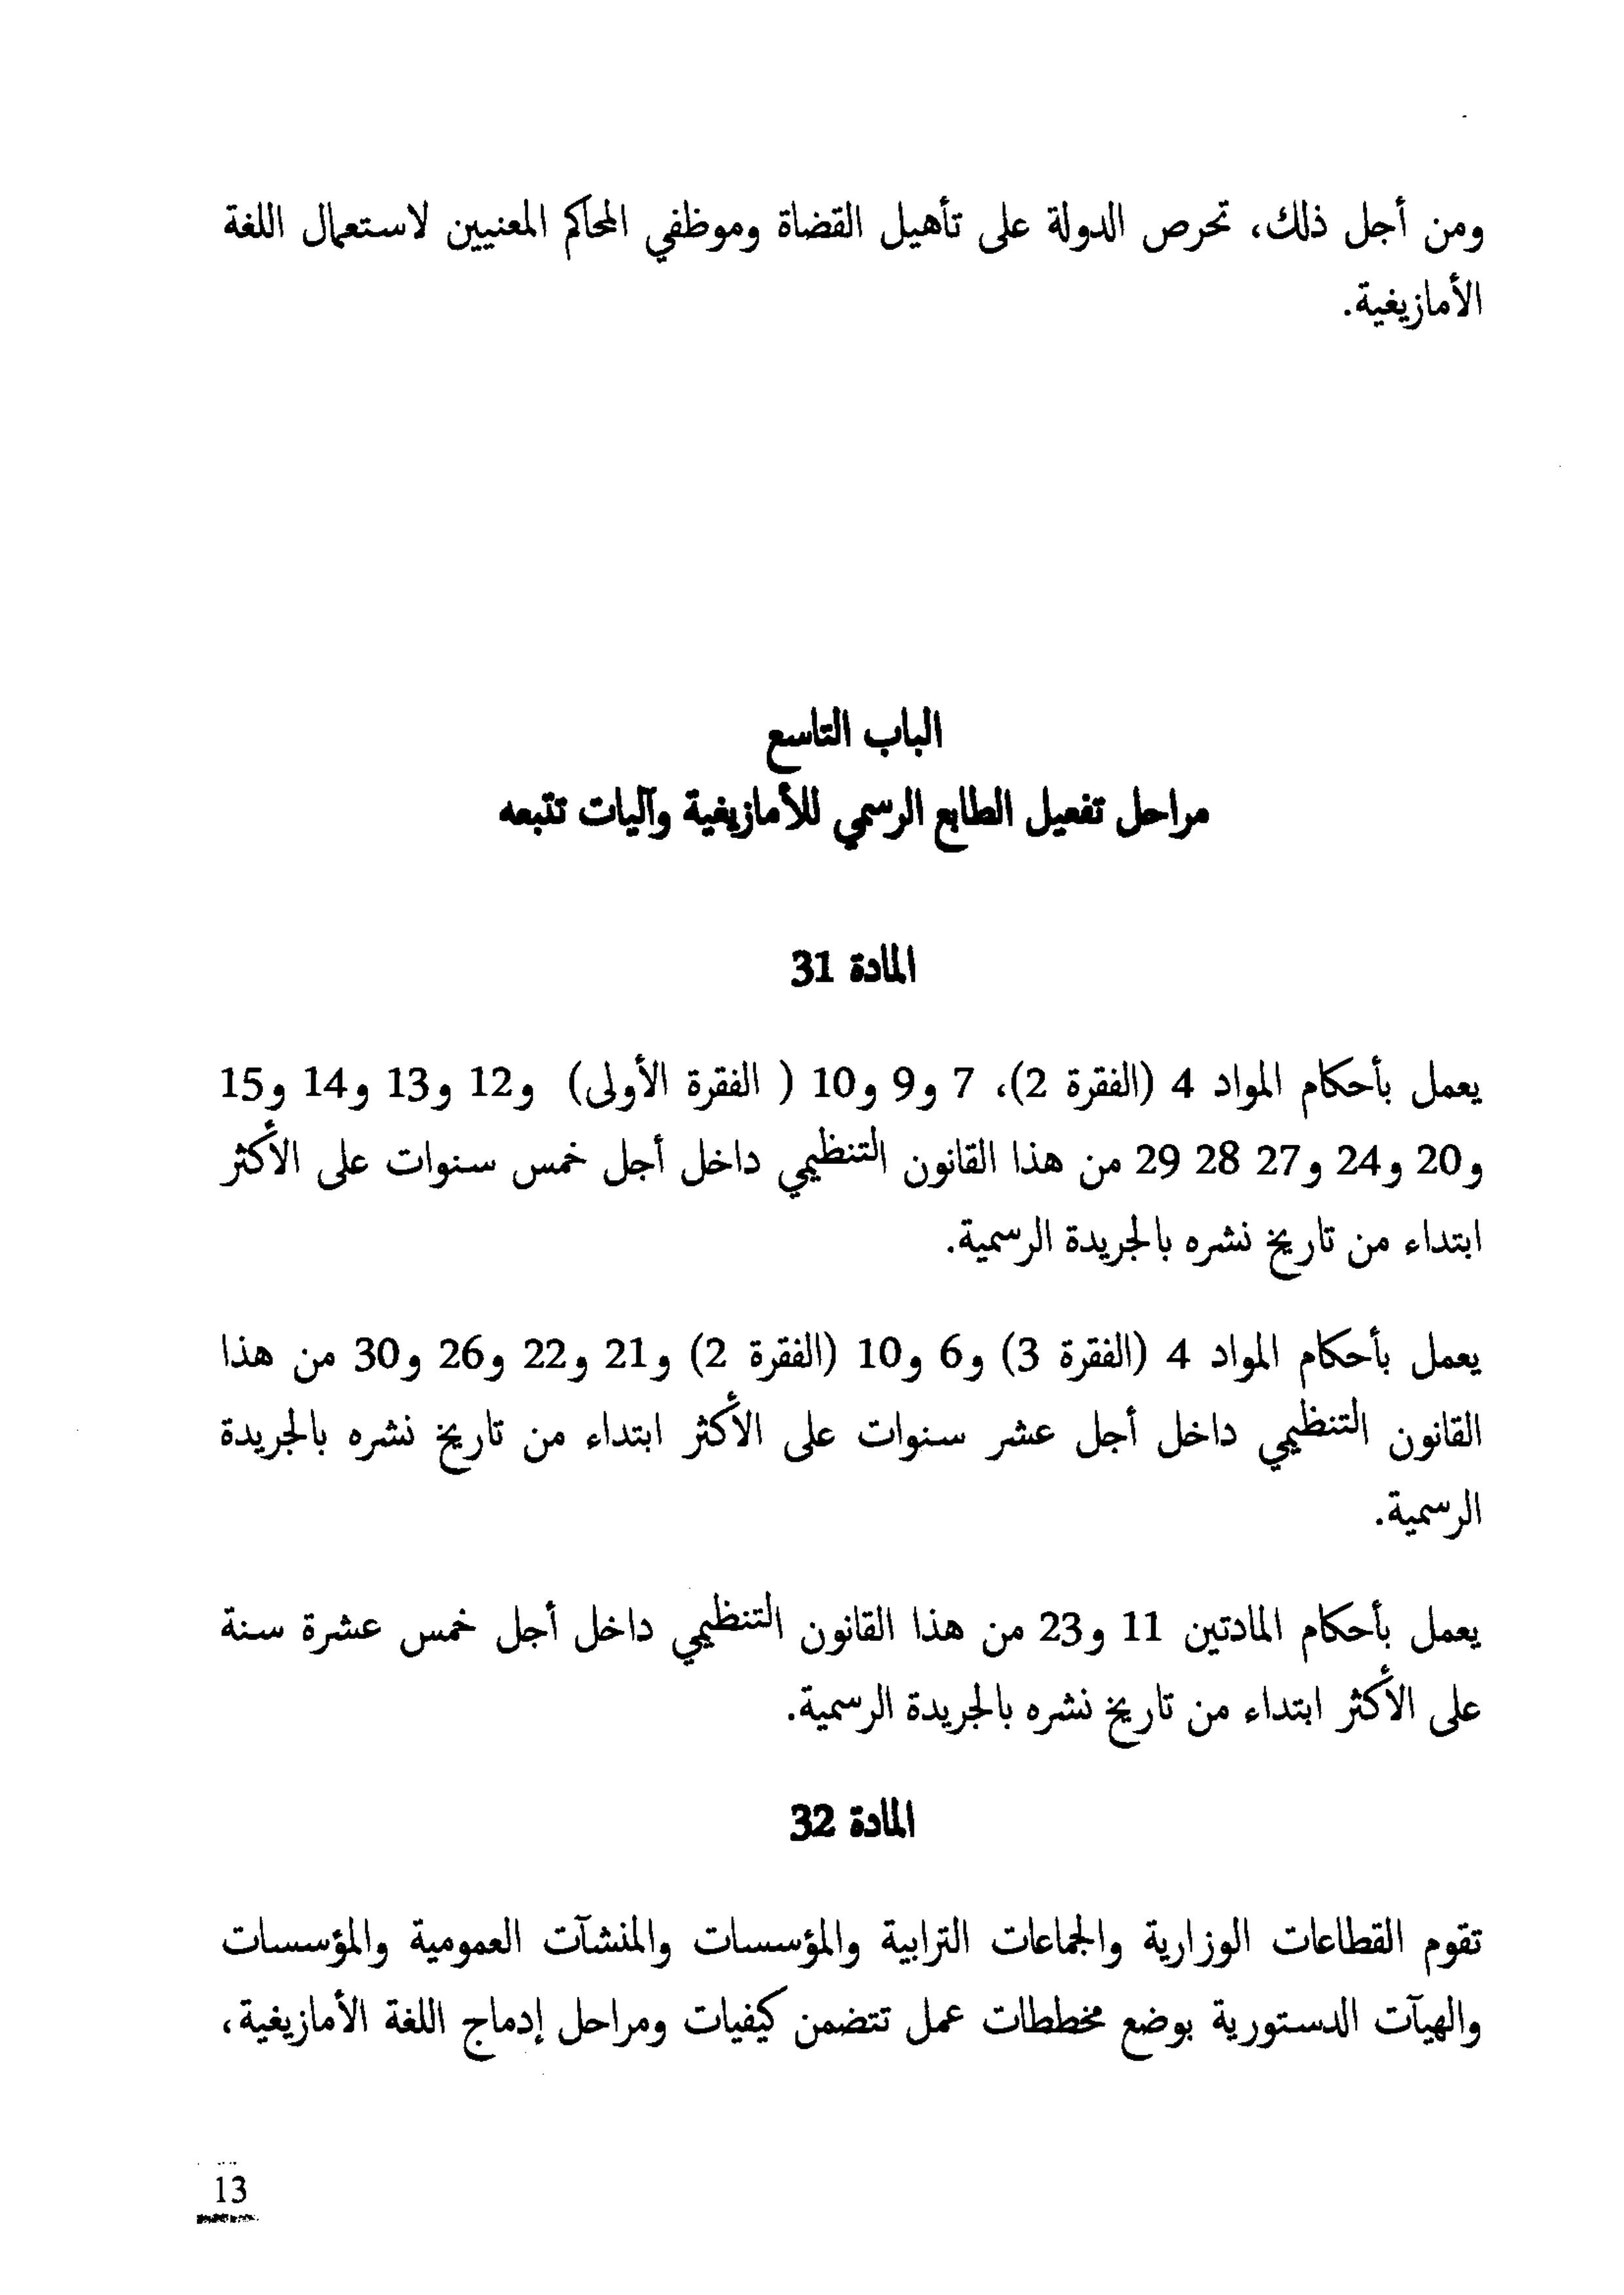 النص الكامل لمشروع القانون التنظيمي  يتعلق بتحديد مراحل تفعيل الطابع الرسمي للأمازيغية